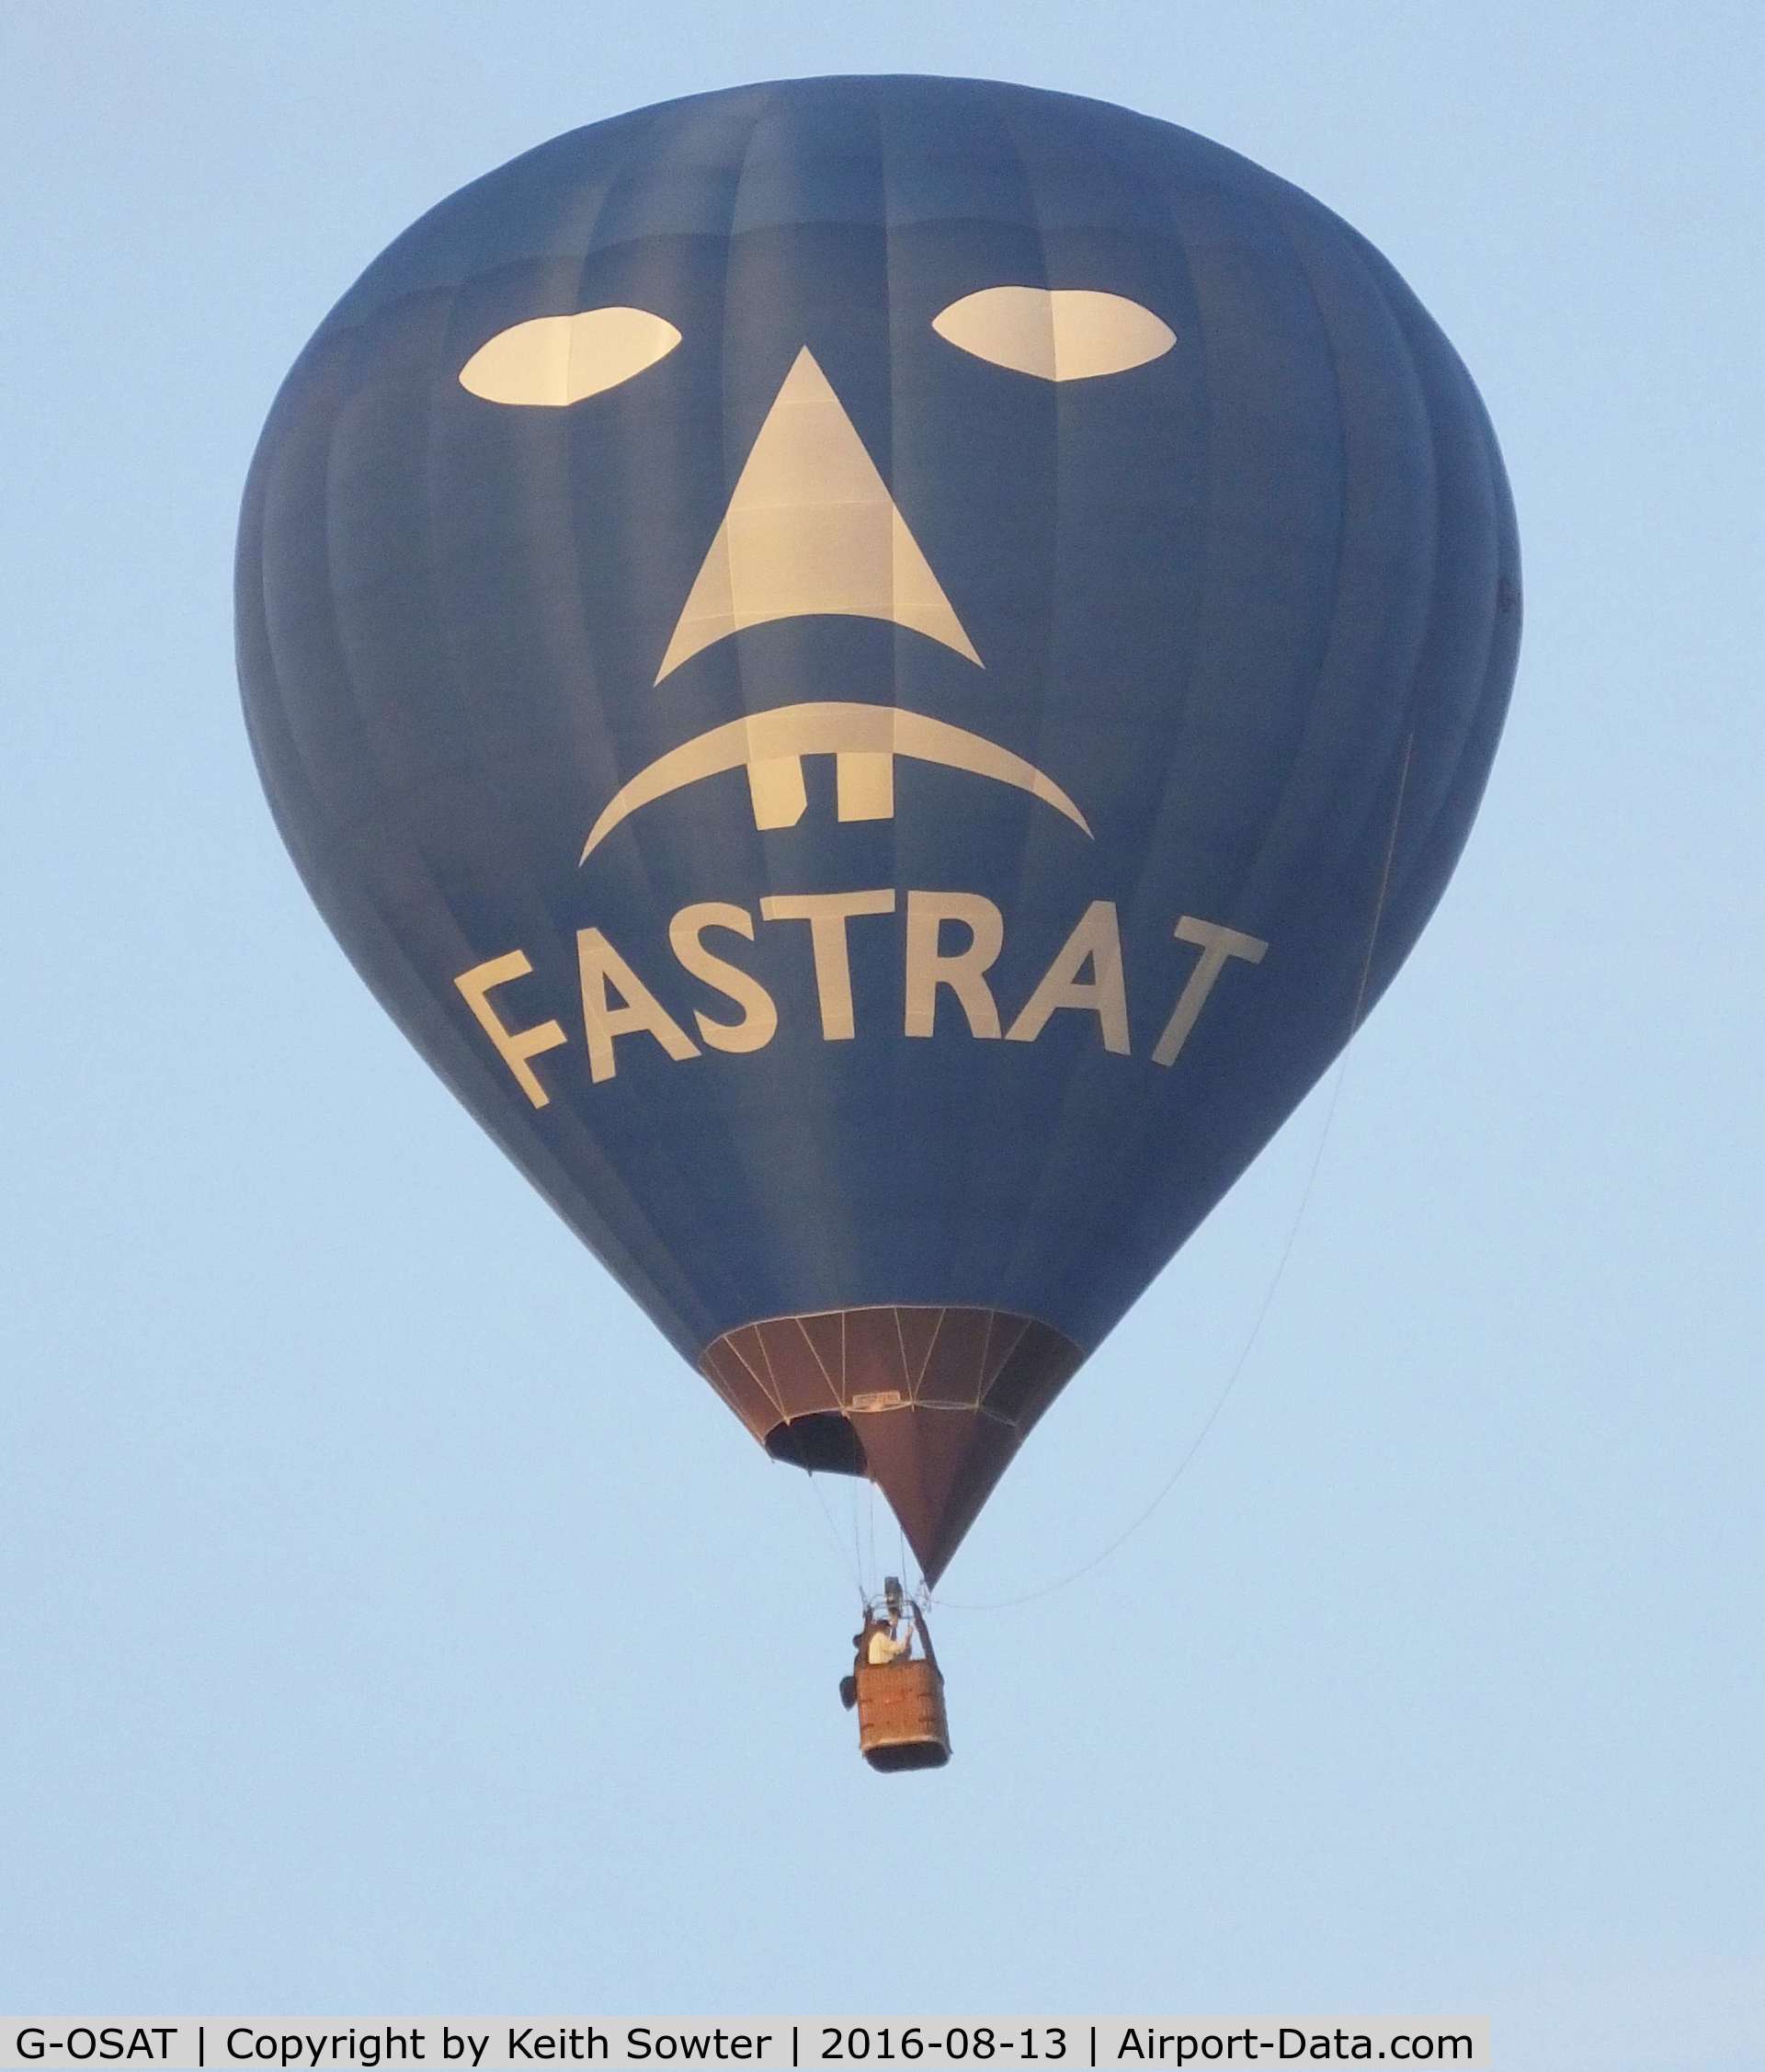 G-OSAT, 2004 Cameron Balloons Z-105 C/N 10564, G-CFXP